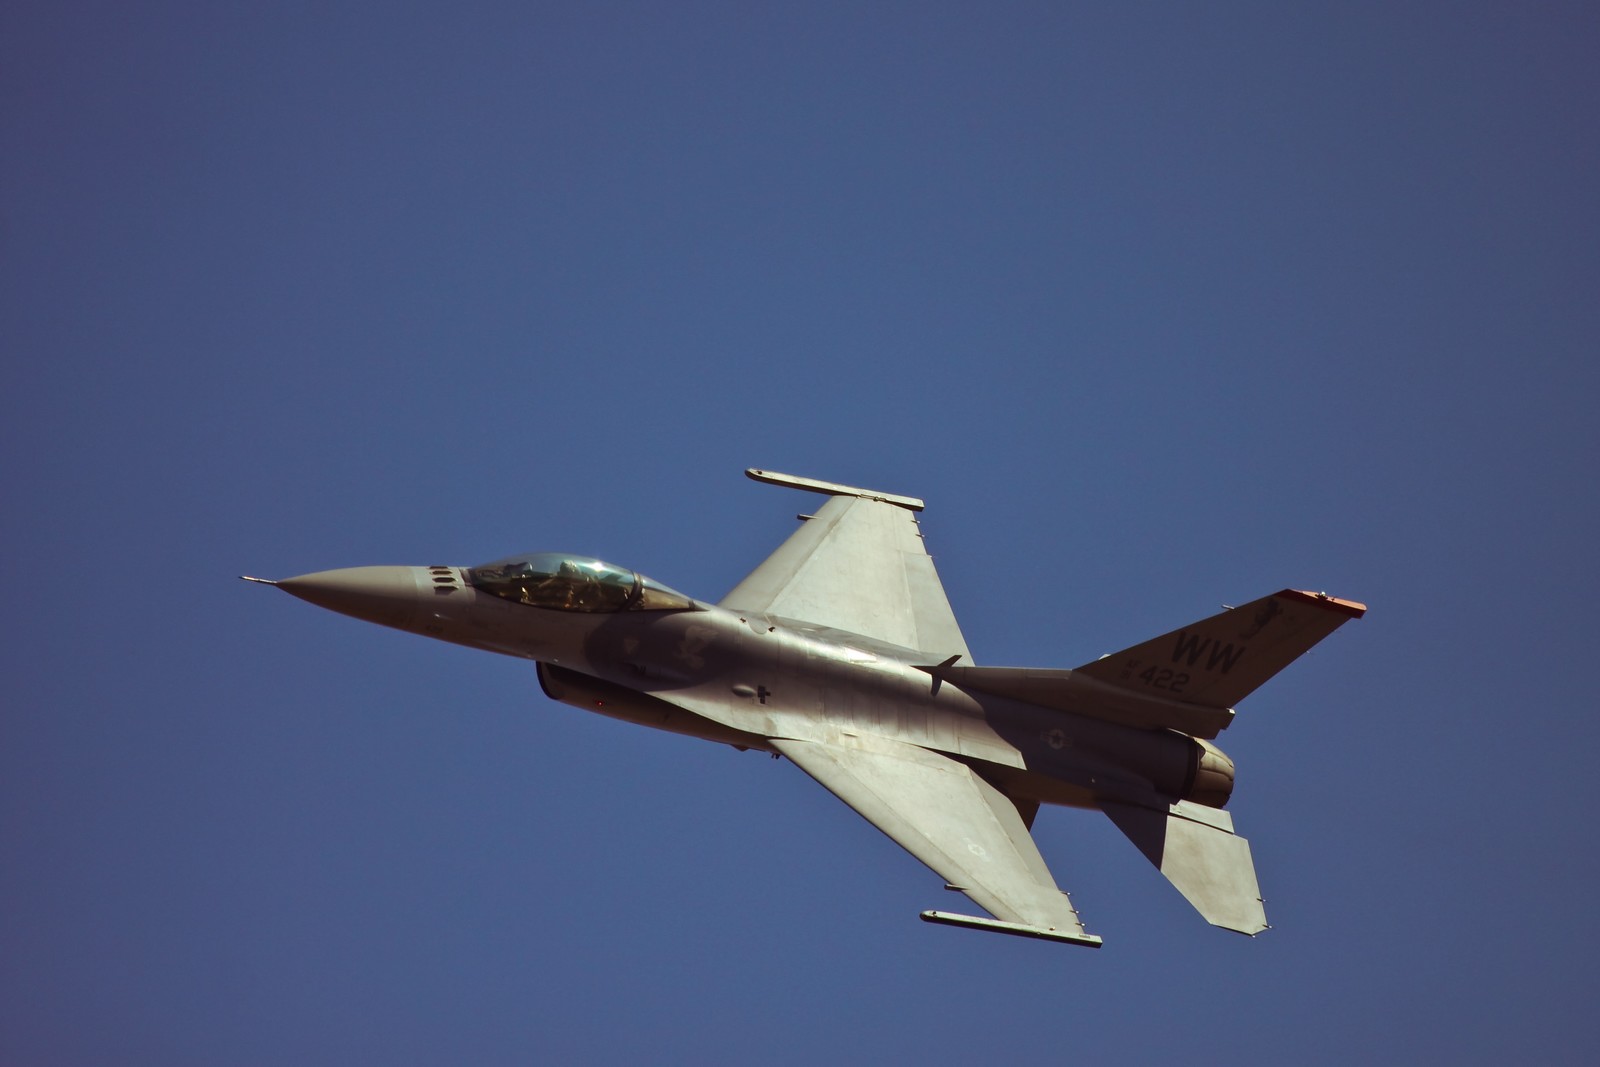 Πηγές ΥΕΘΑ: Κανένα ζήτημα μεταφοράς ελληνικών F-16 στην Ουκρανία